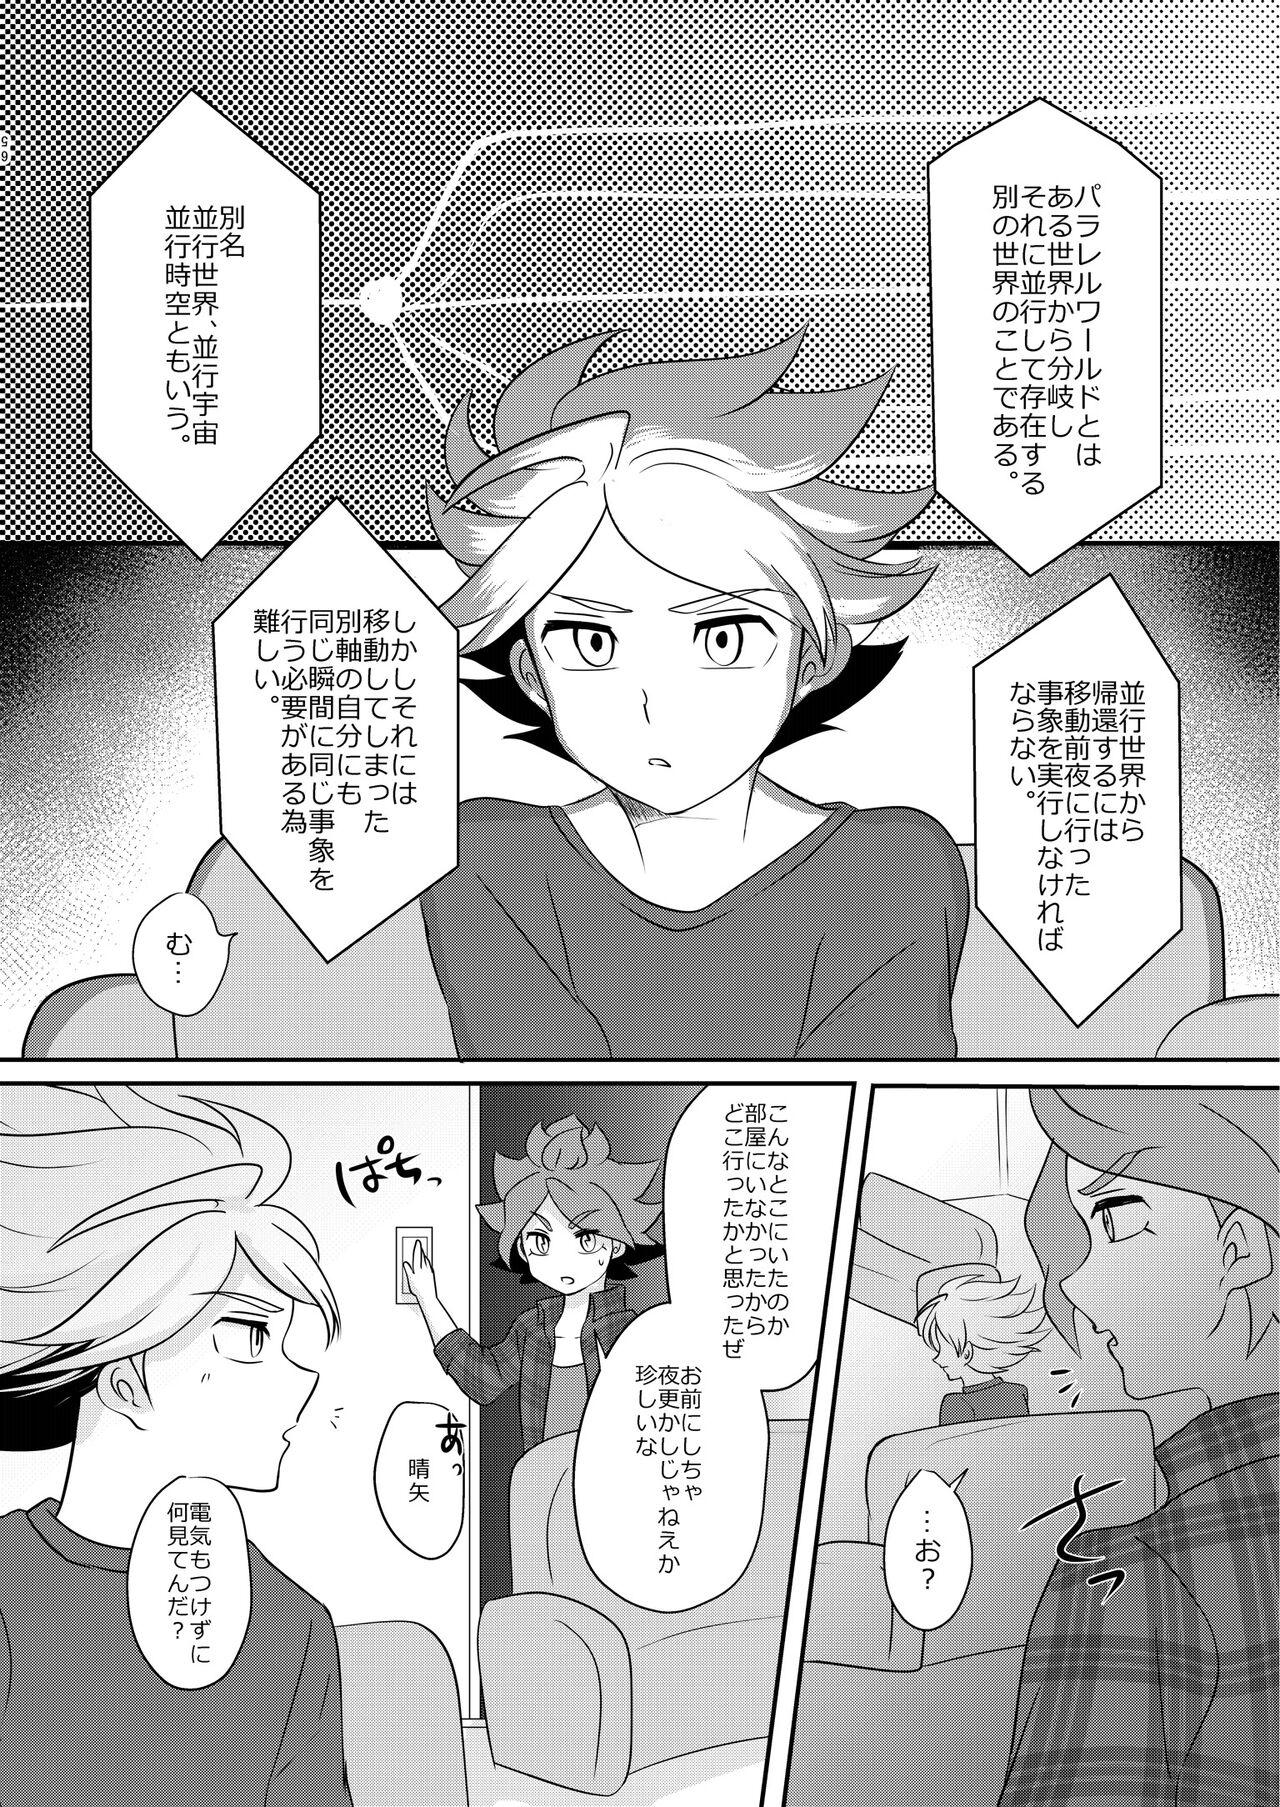 Les Watashi no Shiranai Kimi o Shiritai - Inazuma eleven Closeups - Page 3